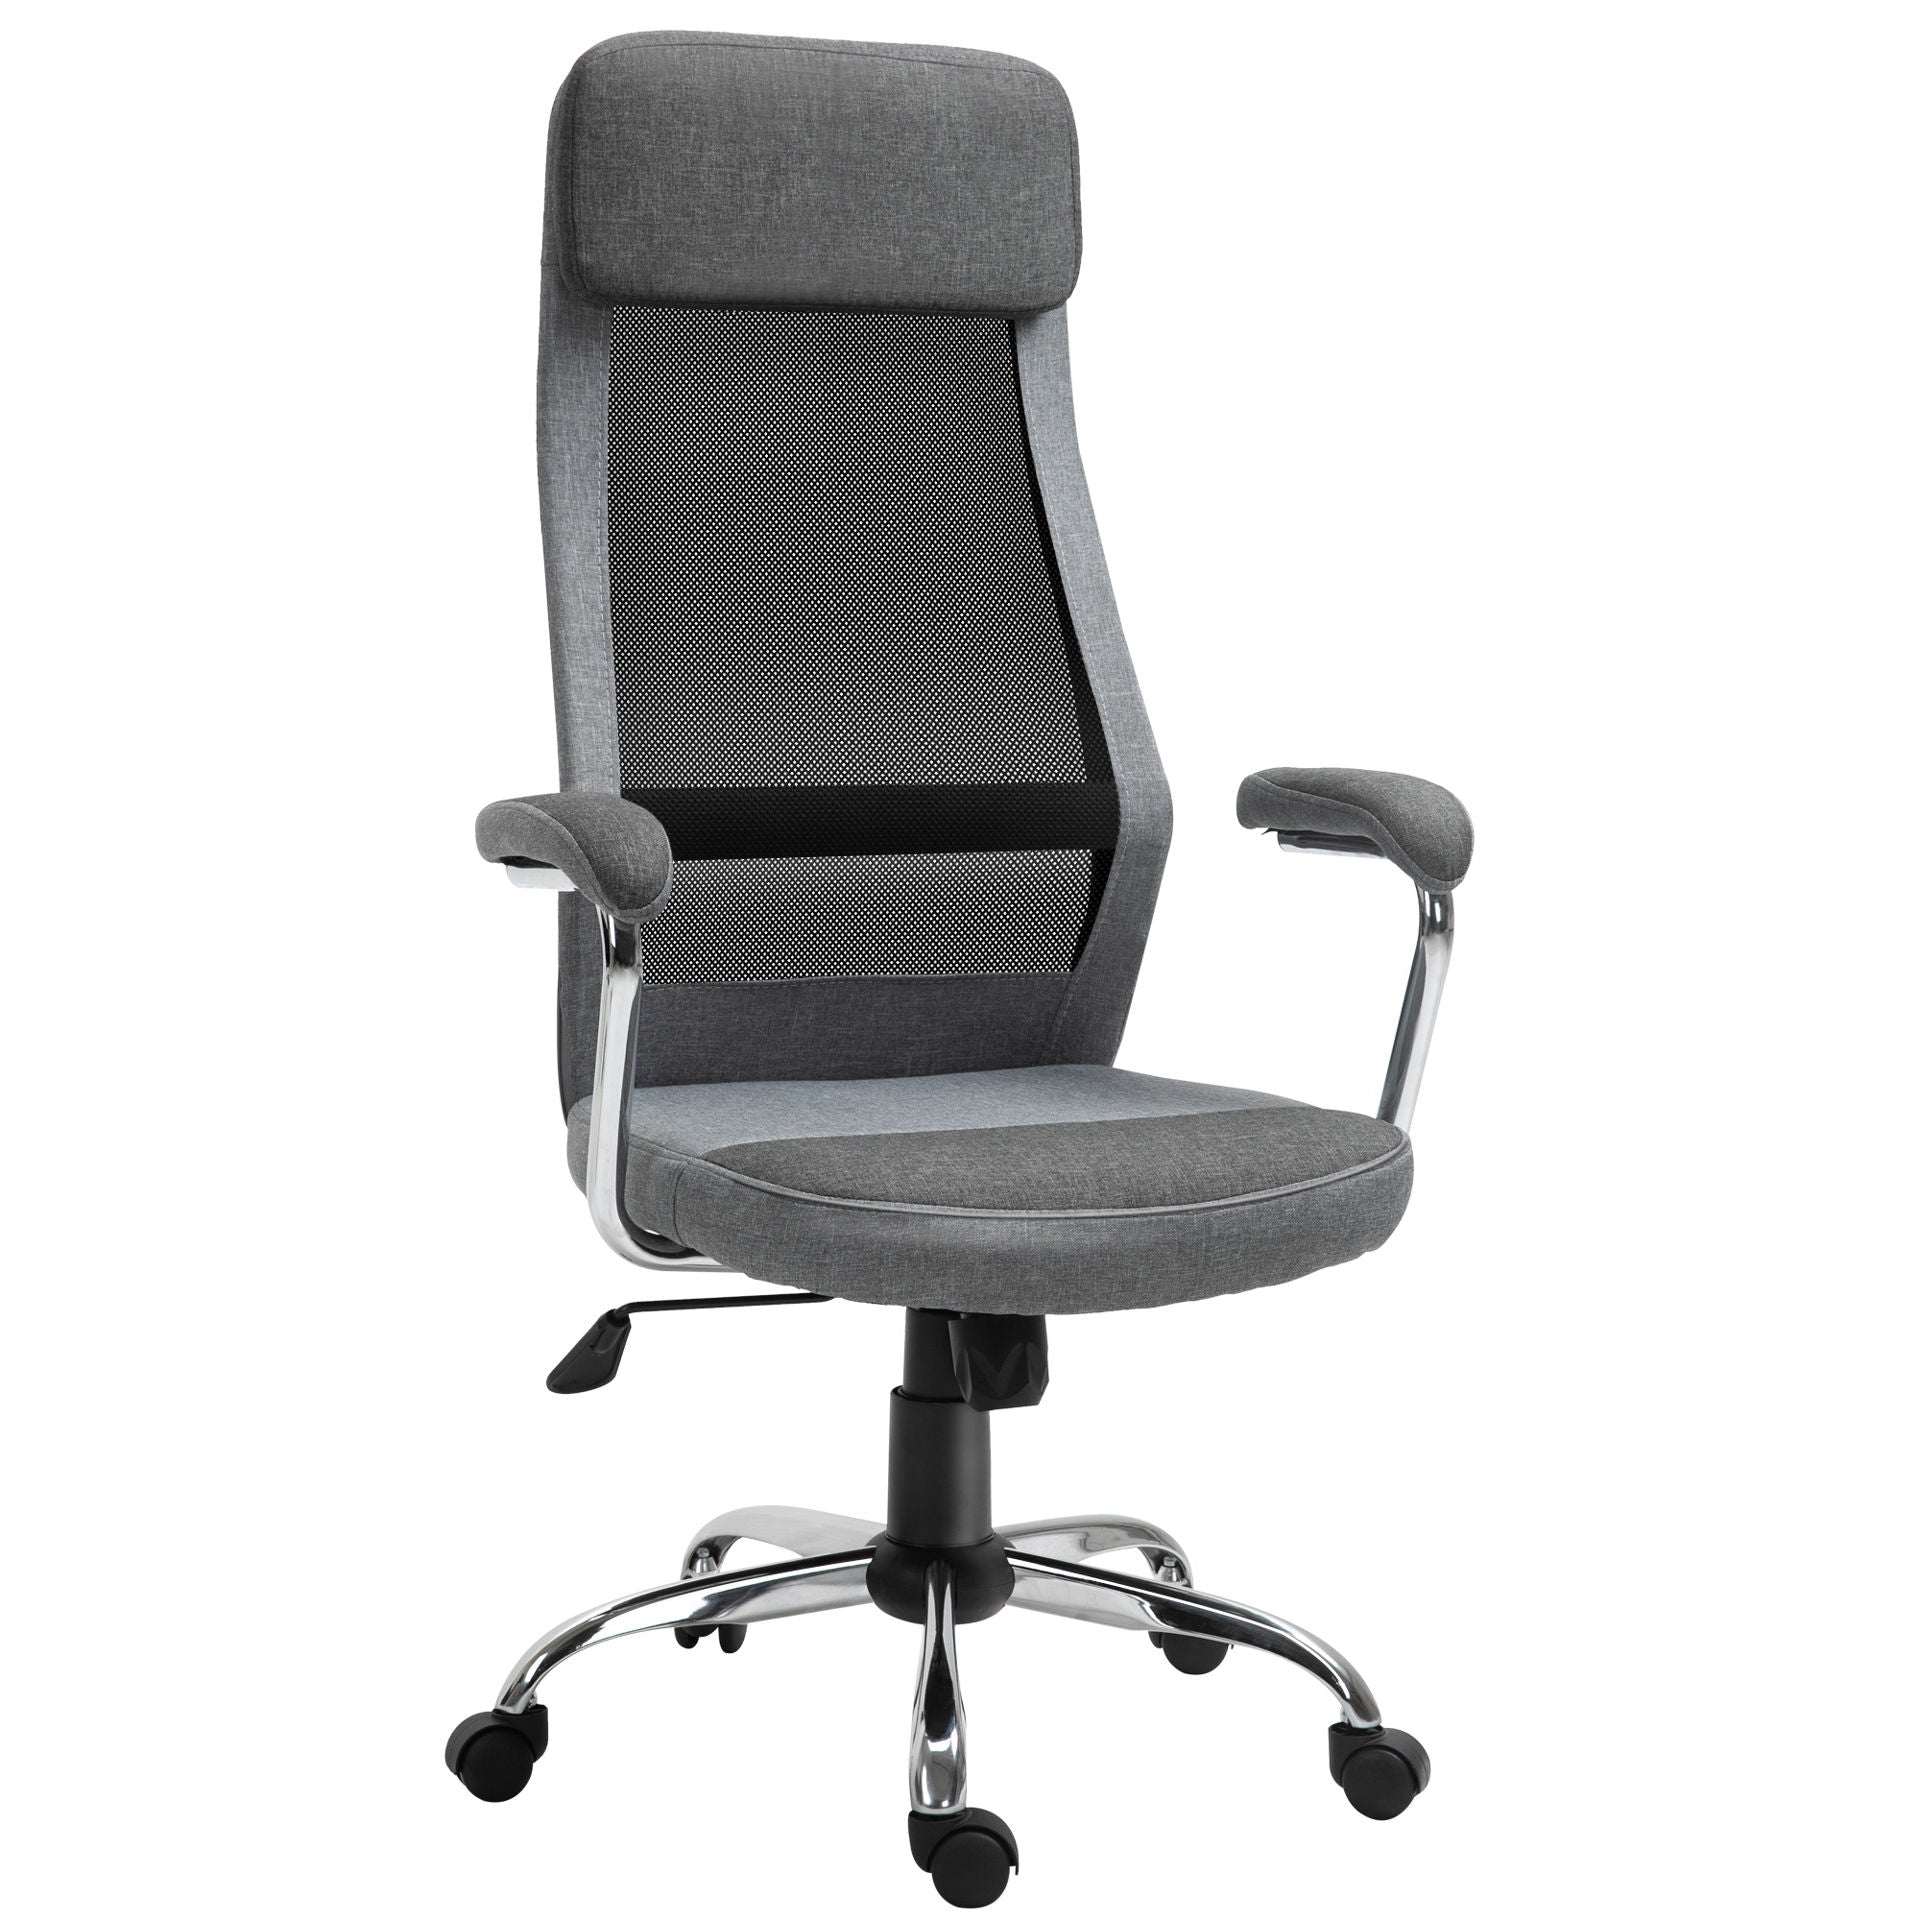 Nancy's Stovel Bay Office Chair with Ergonomic Design - Light Gray, Black - Foam, Nylon, Steel - cm x 25.59 cm x 46.85 cm